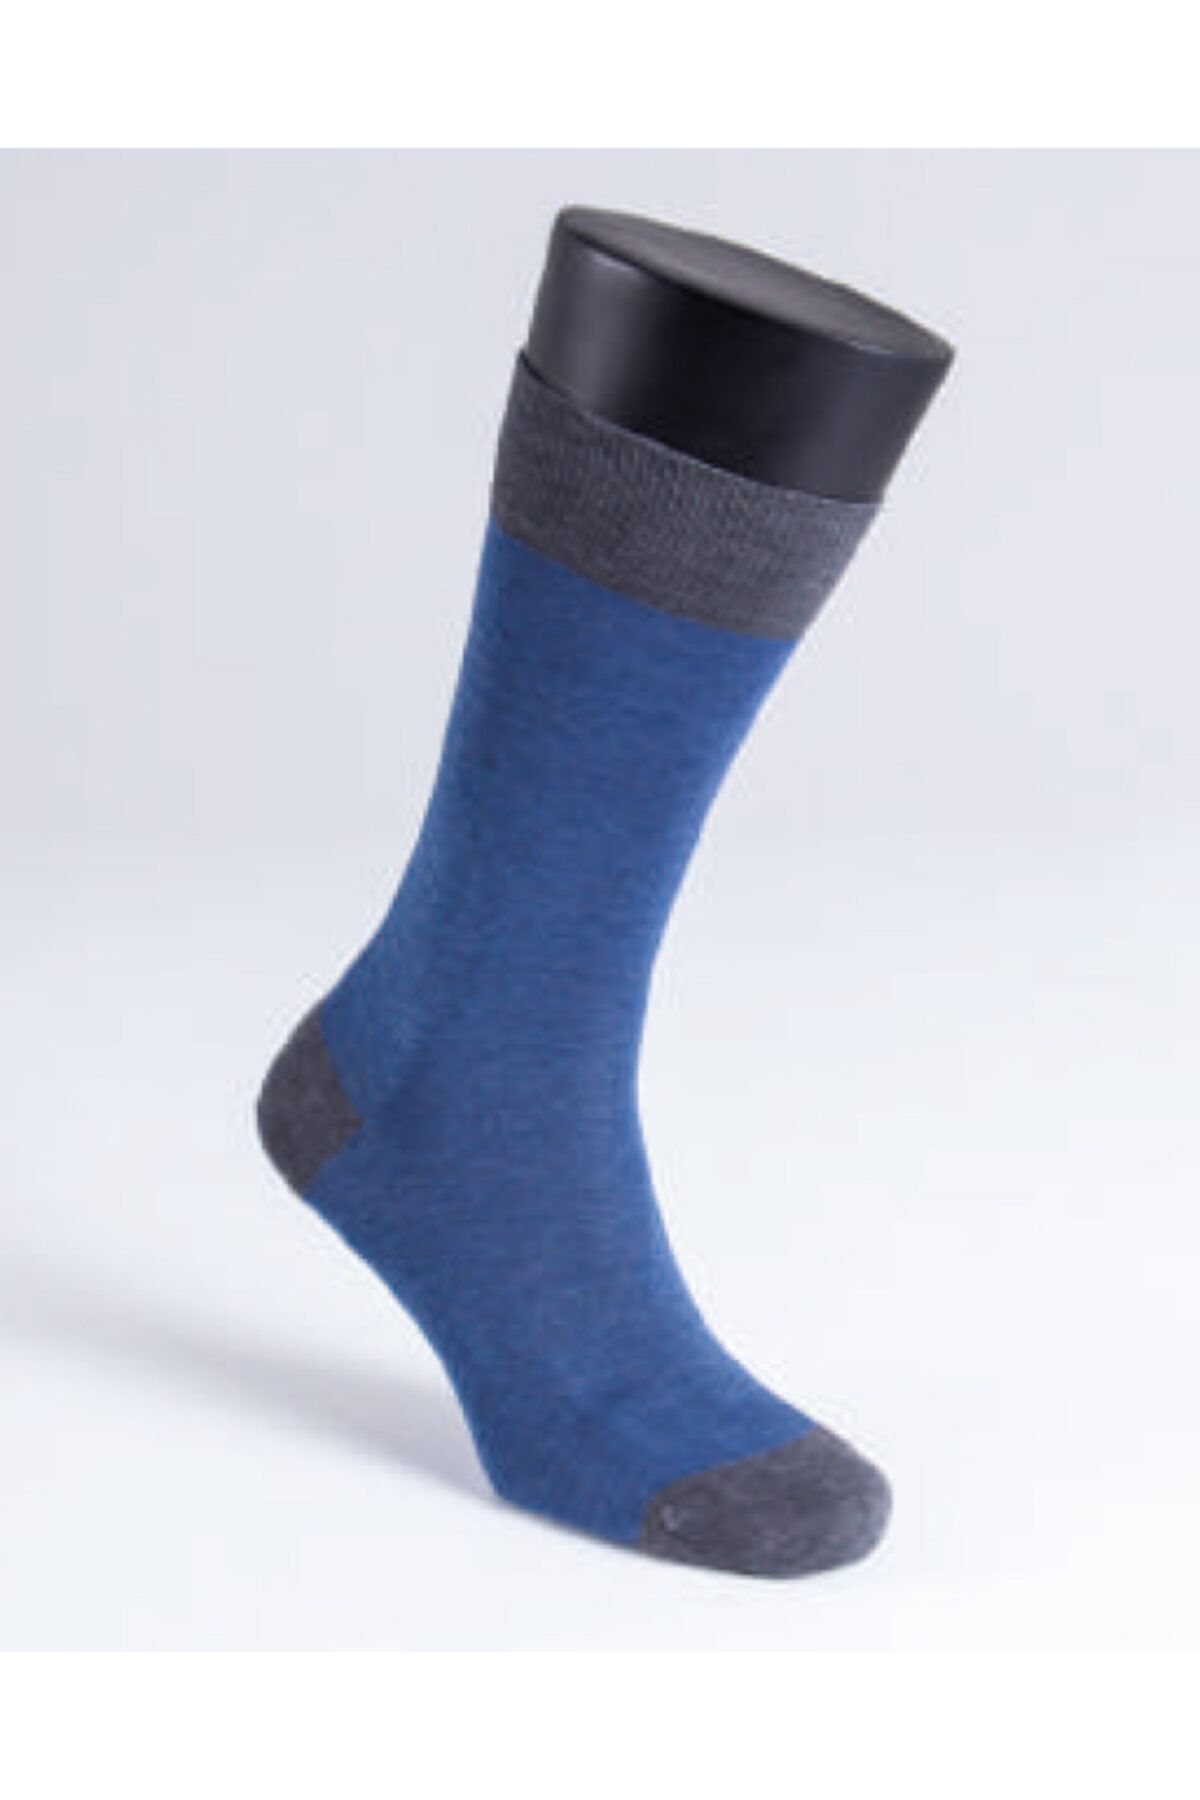 Blackspade Erkek Çorap 9910 - Mavi